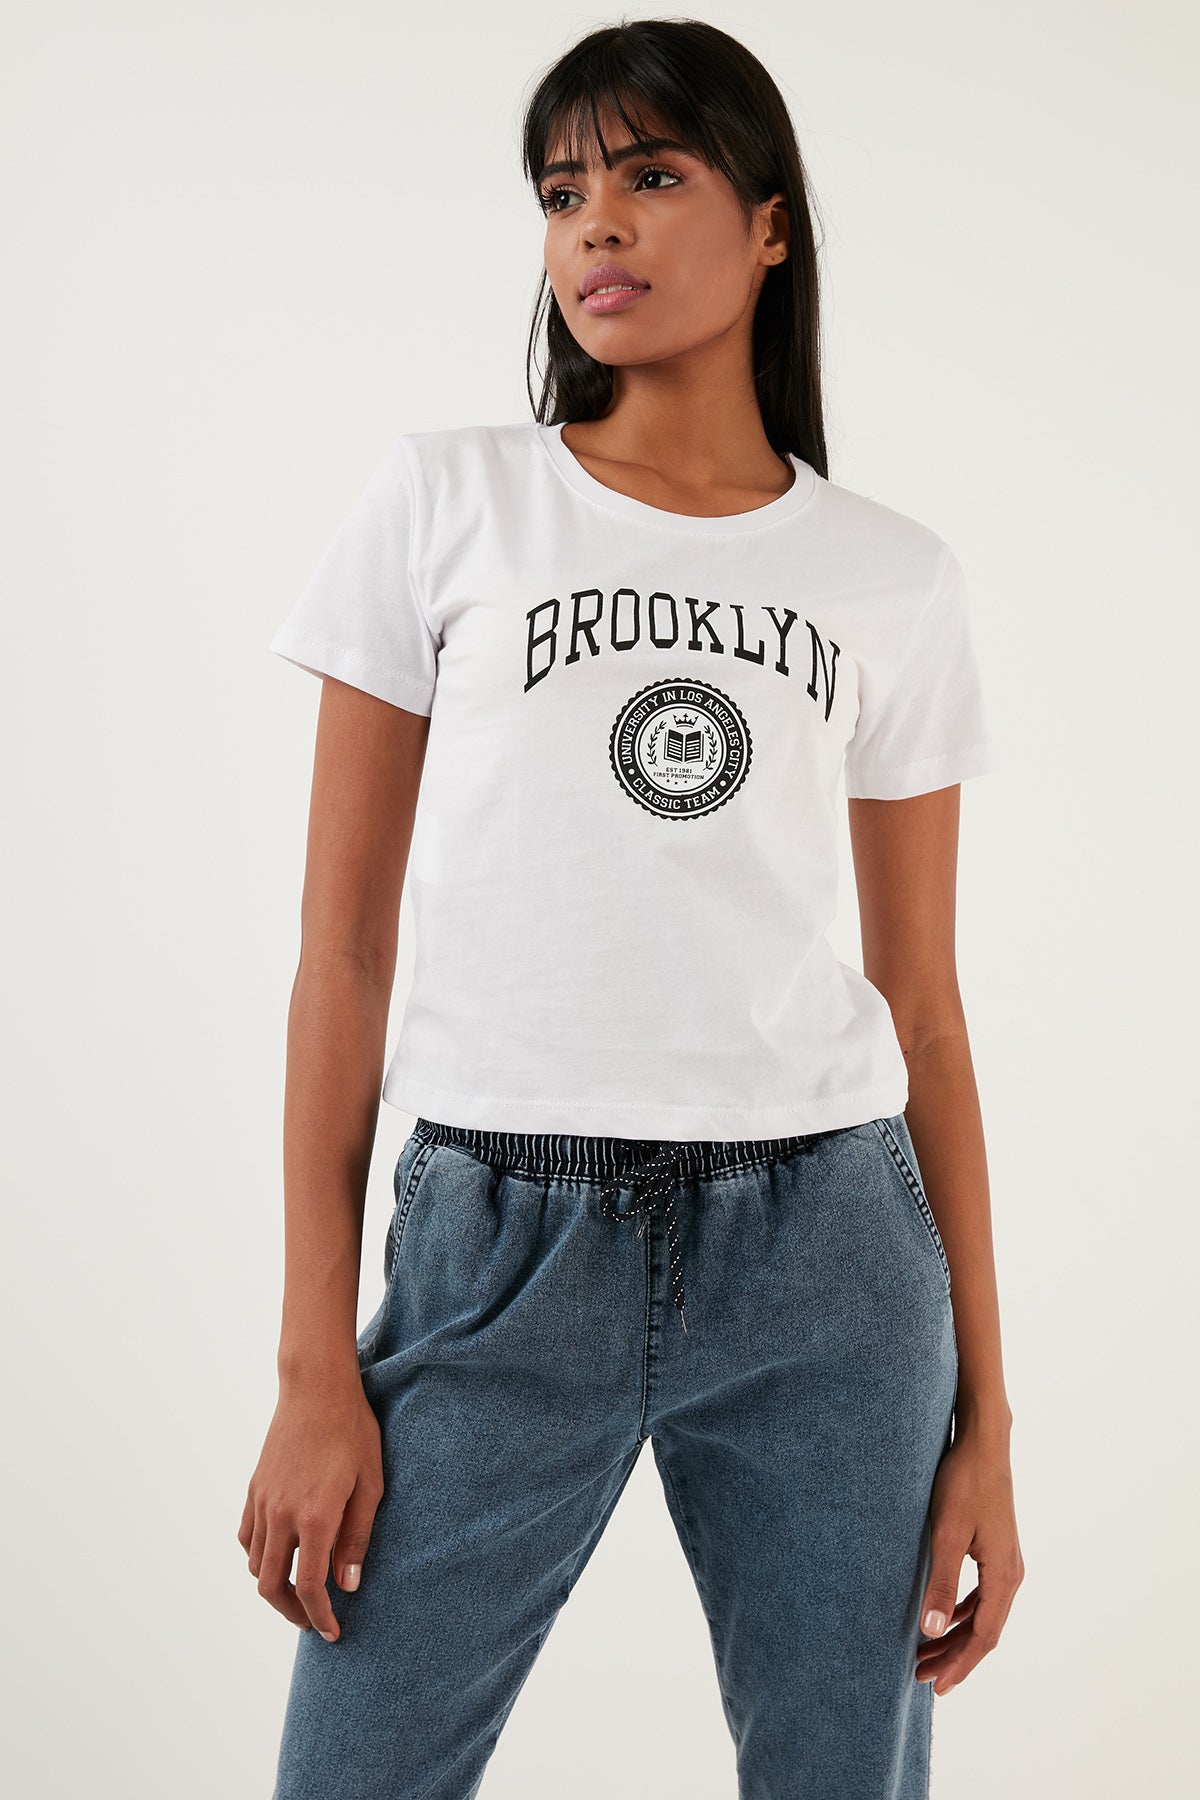 Lela Brooklyn Baskılı Bisiklet Yaka Dar Kesim Bayan T Shirt 5864581 BEYAZ